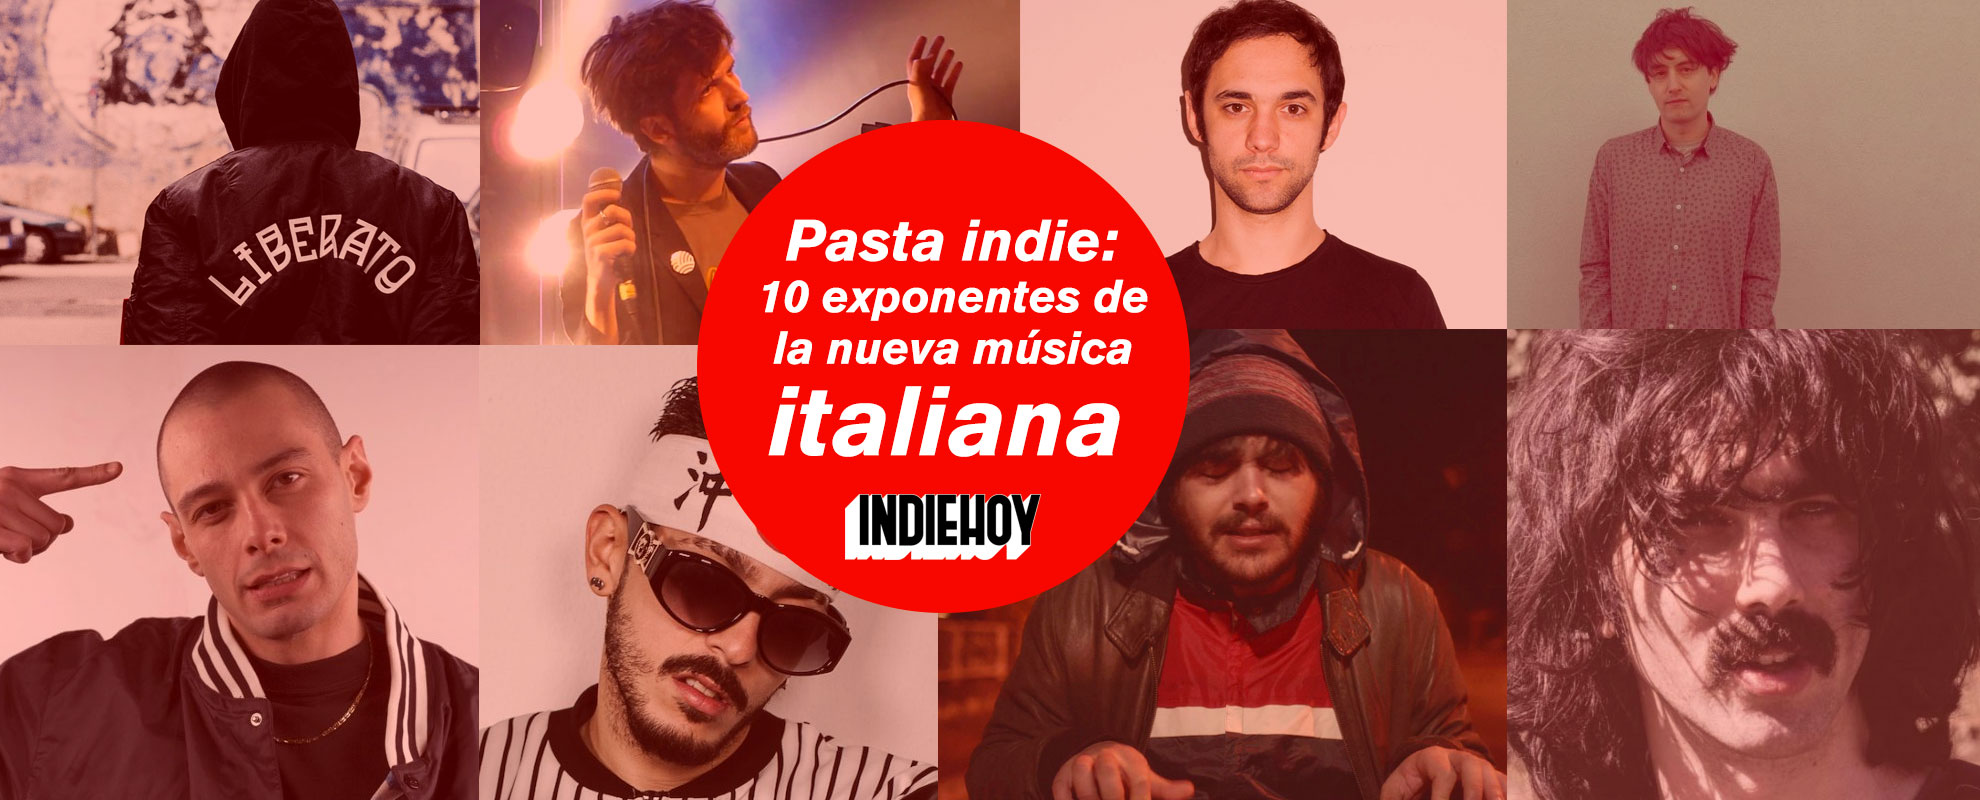 Pasta indie: 10 exponentes de la nueva música italiana